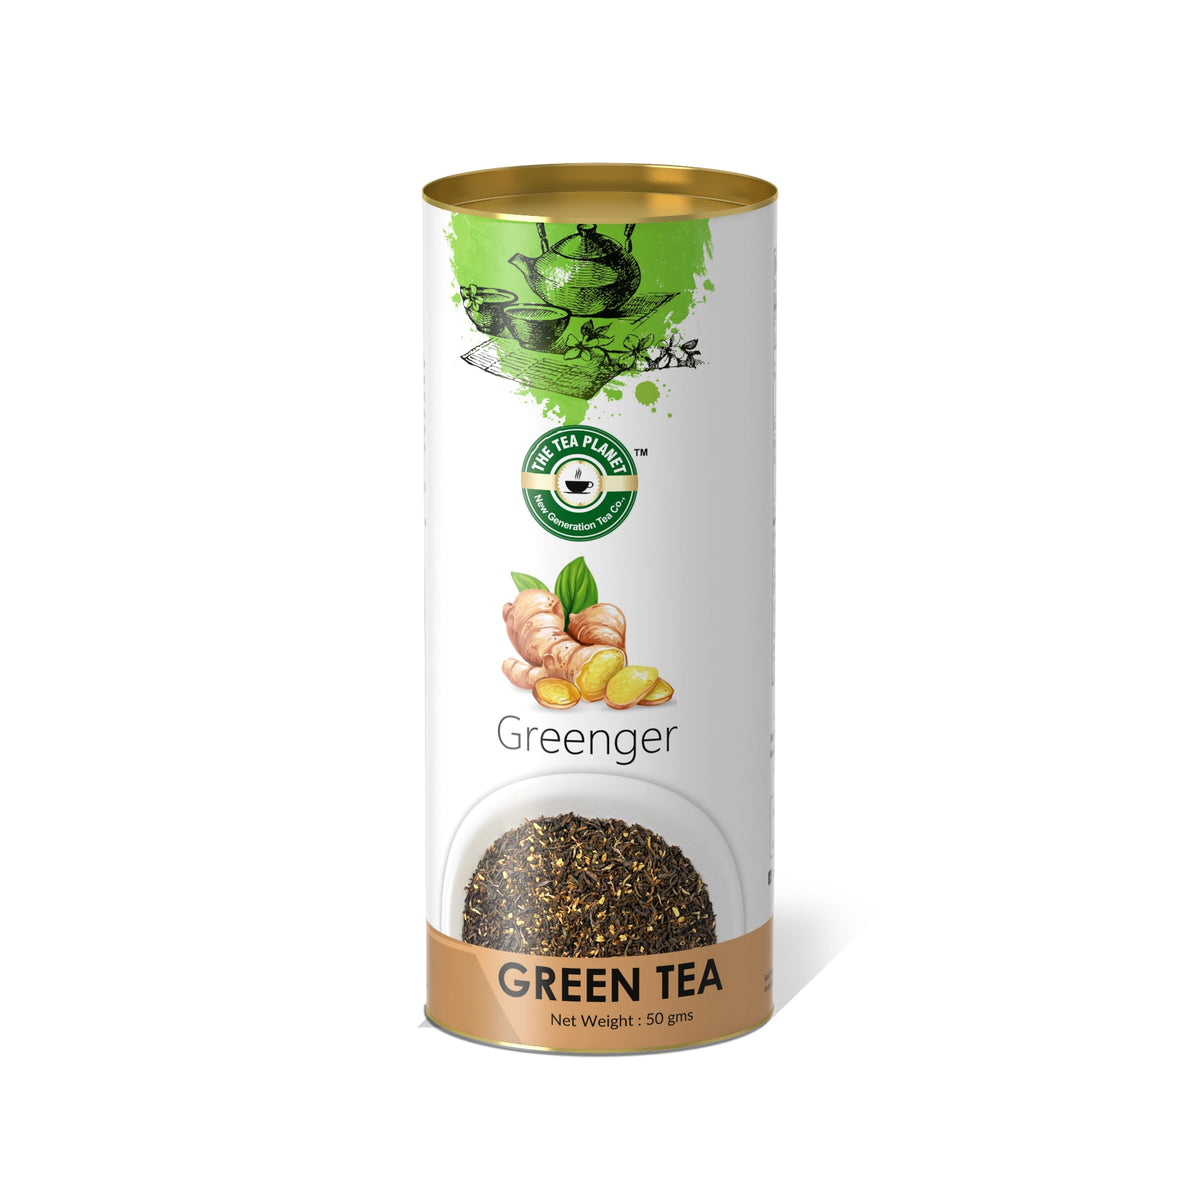 Greenger Orthodox Tea